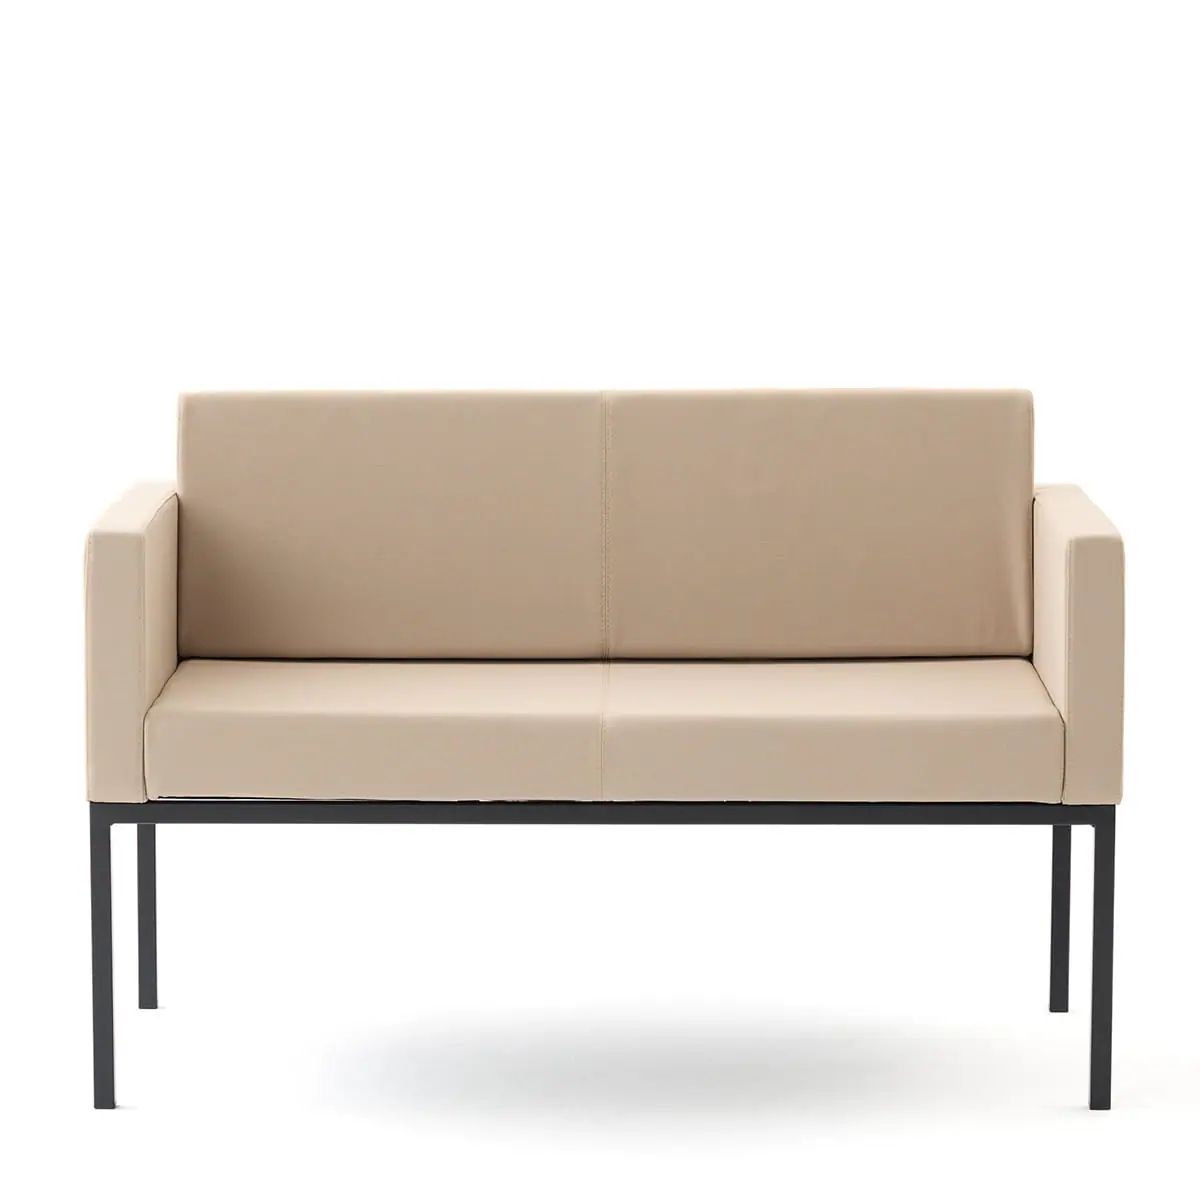 delaoliva-cubik-soft-lounge-seating-006